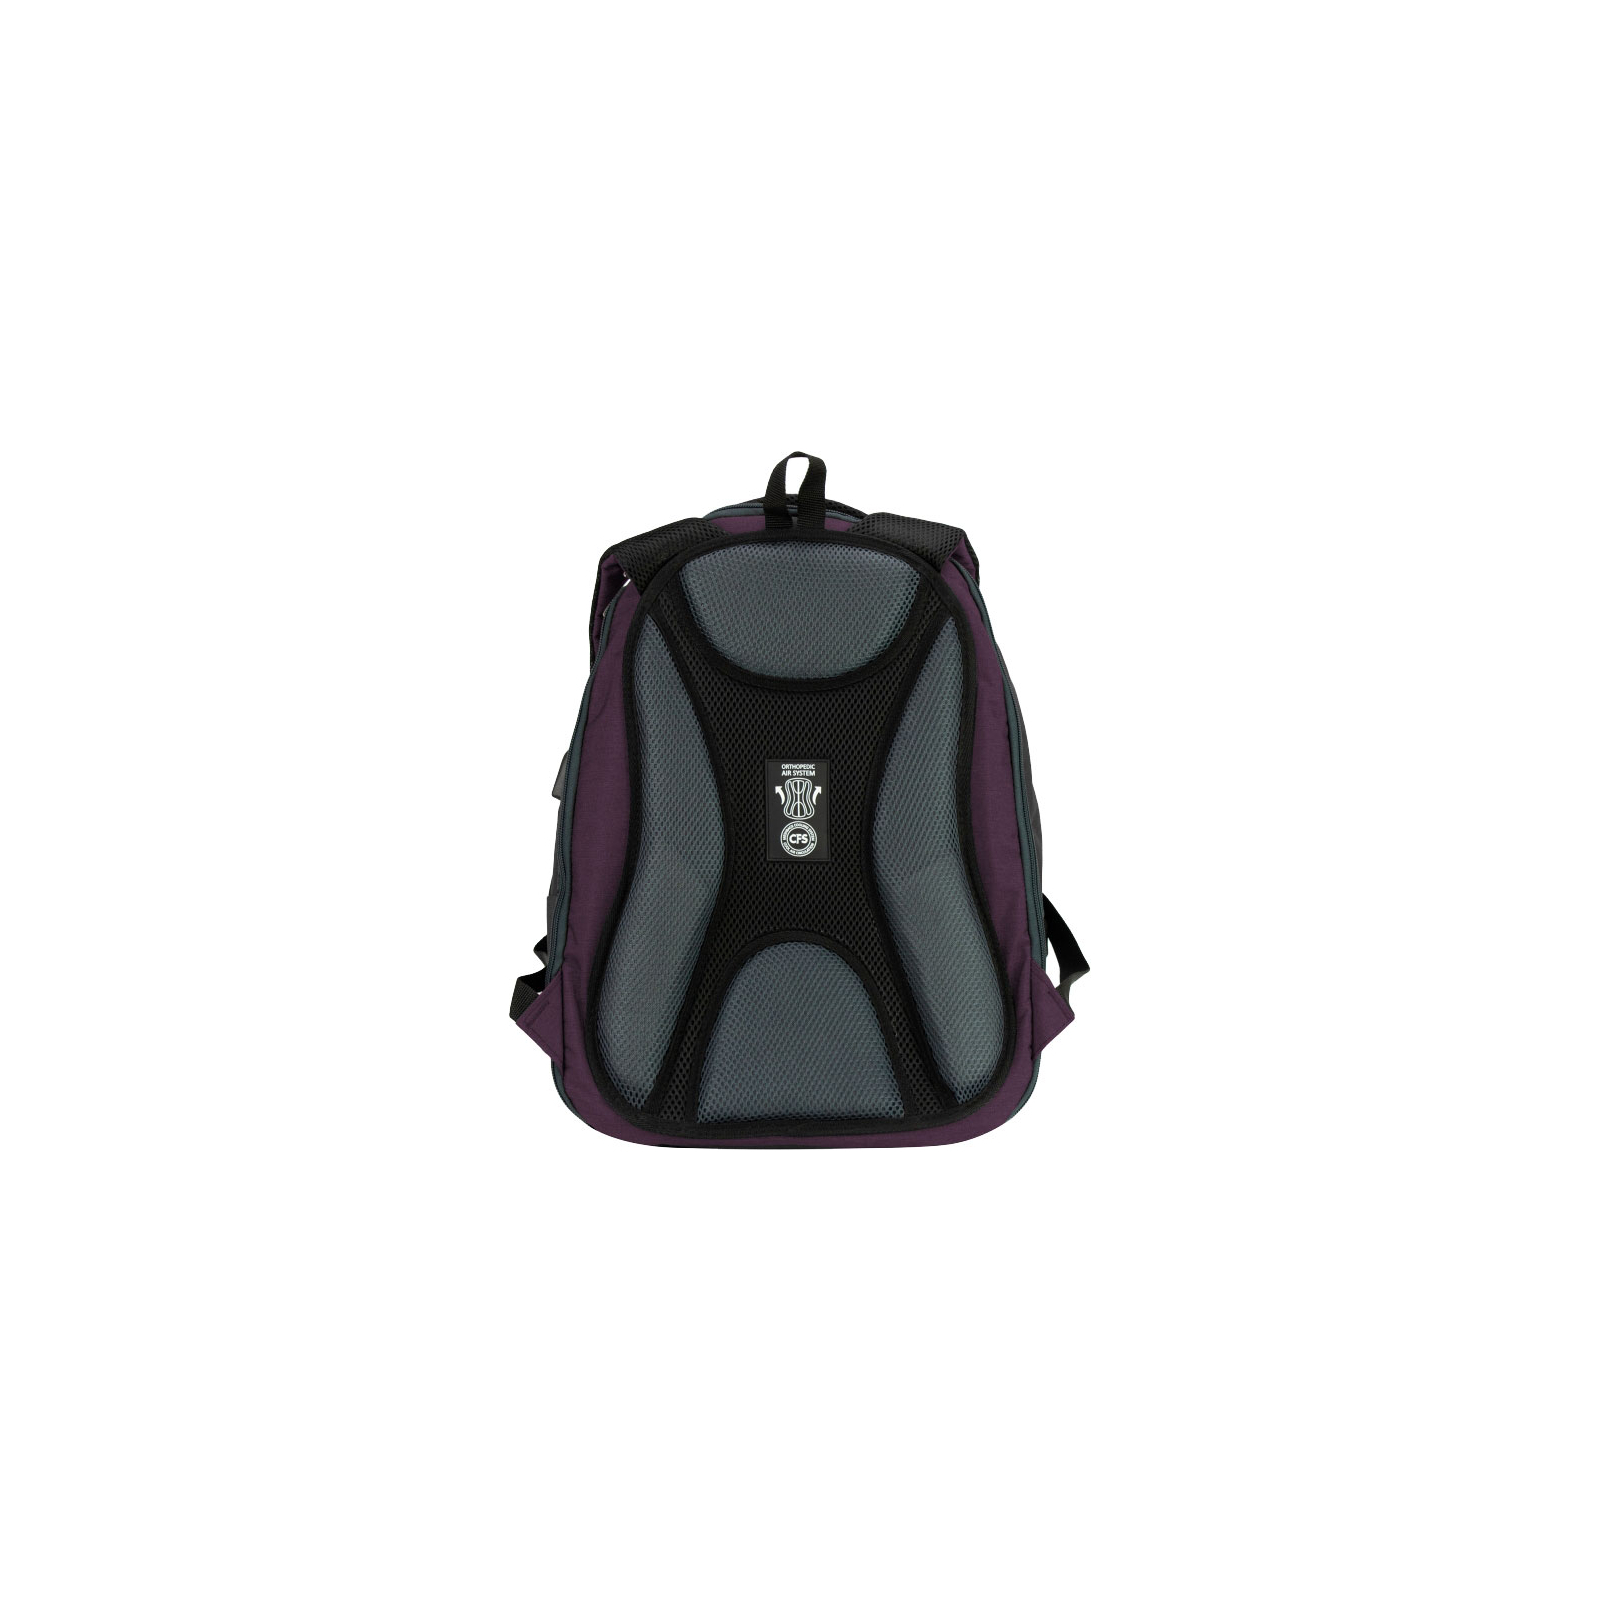 Рюкзак школьный Cool For School 44x32x20 см 28 л Фиолетово-малиновый (CF86588-05) изображение 4